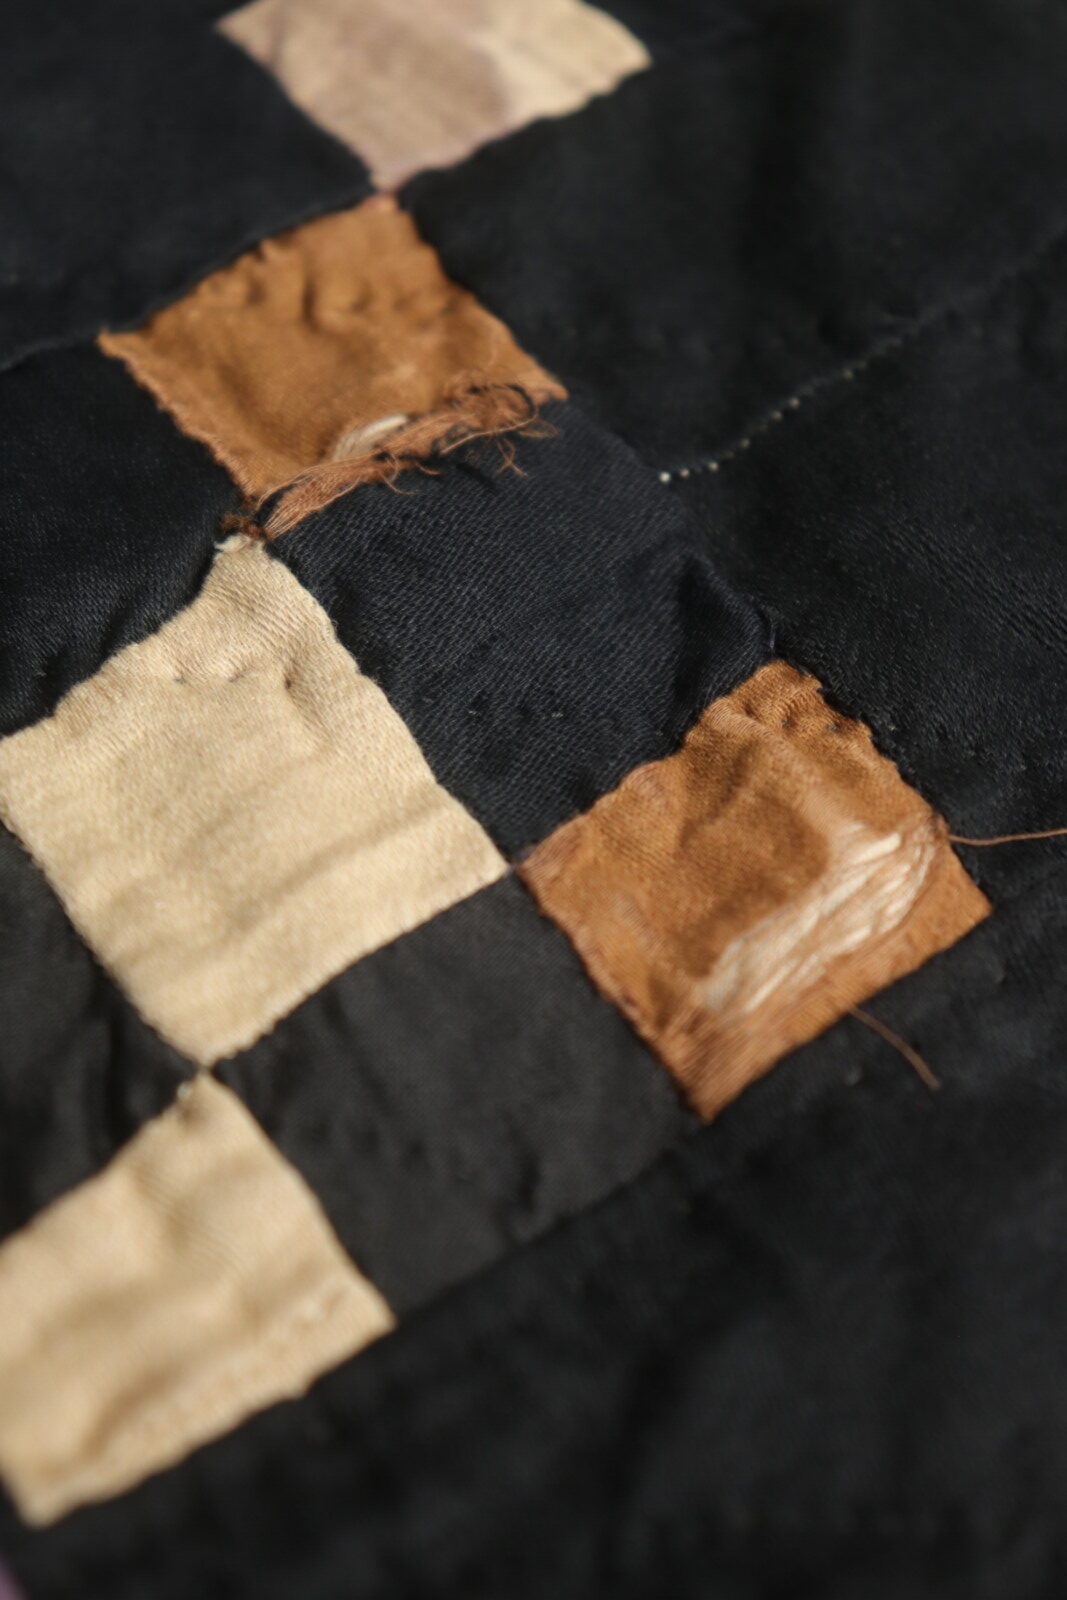 1940's,amish quilt,W9patch quilt,USA,antique,indigo quilt,